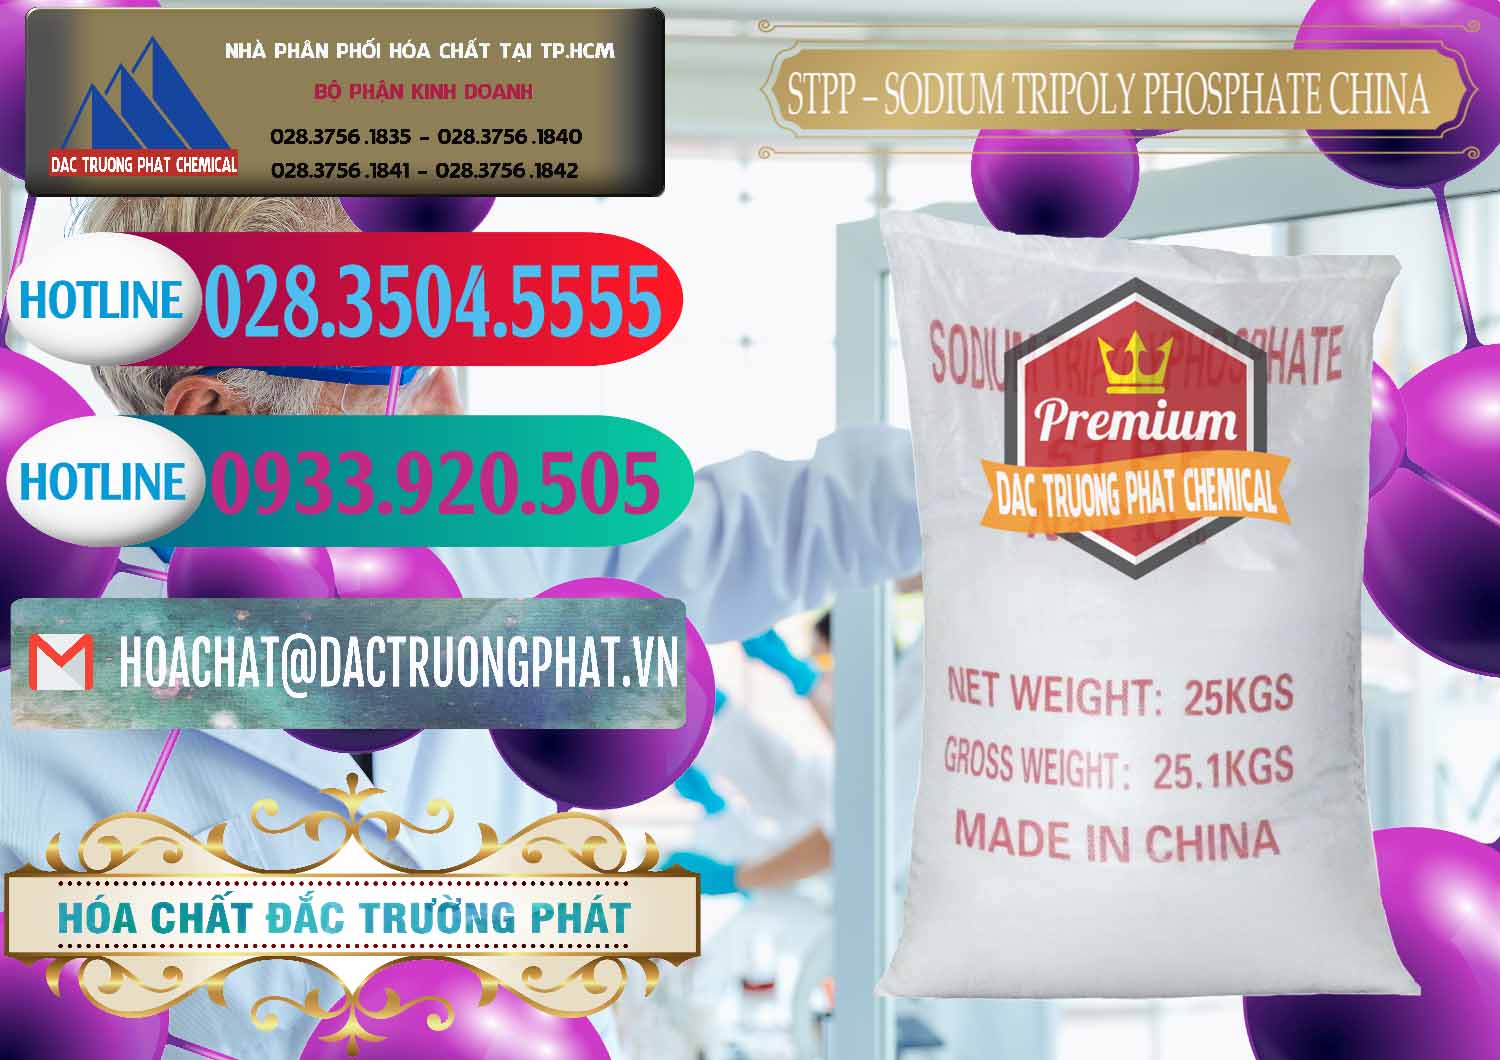 Nơi bán Sodium Tripoly Phosphate - STPP 96% Chữ Đỏ Trung Quốc China - 0155 - Nhà nhập khẩu _ phân phối hóa chất tại TP.HCM - truongphat.vn